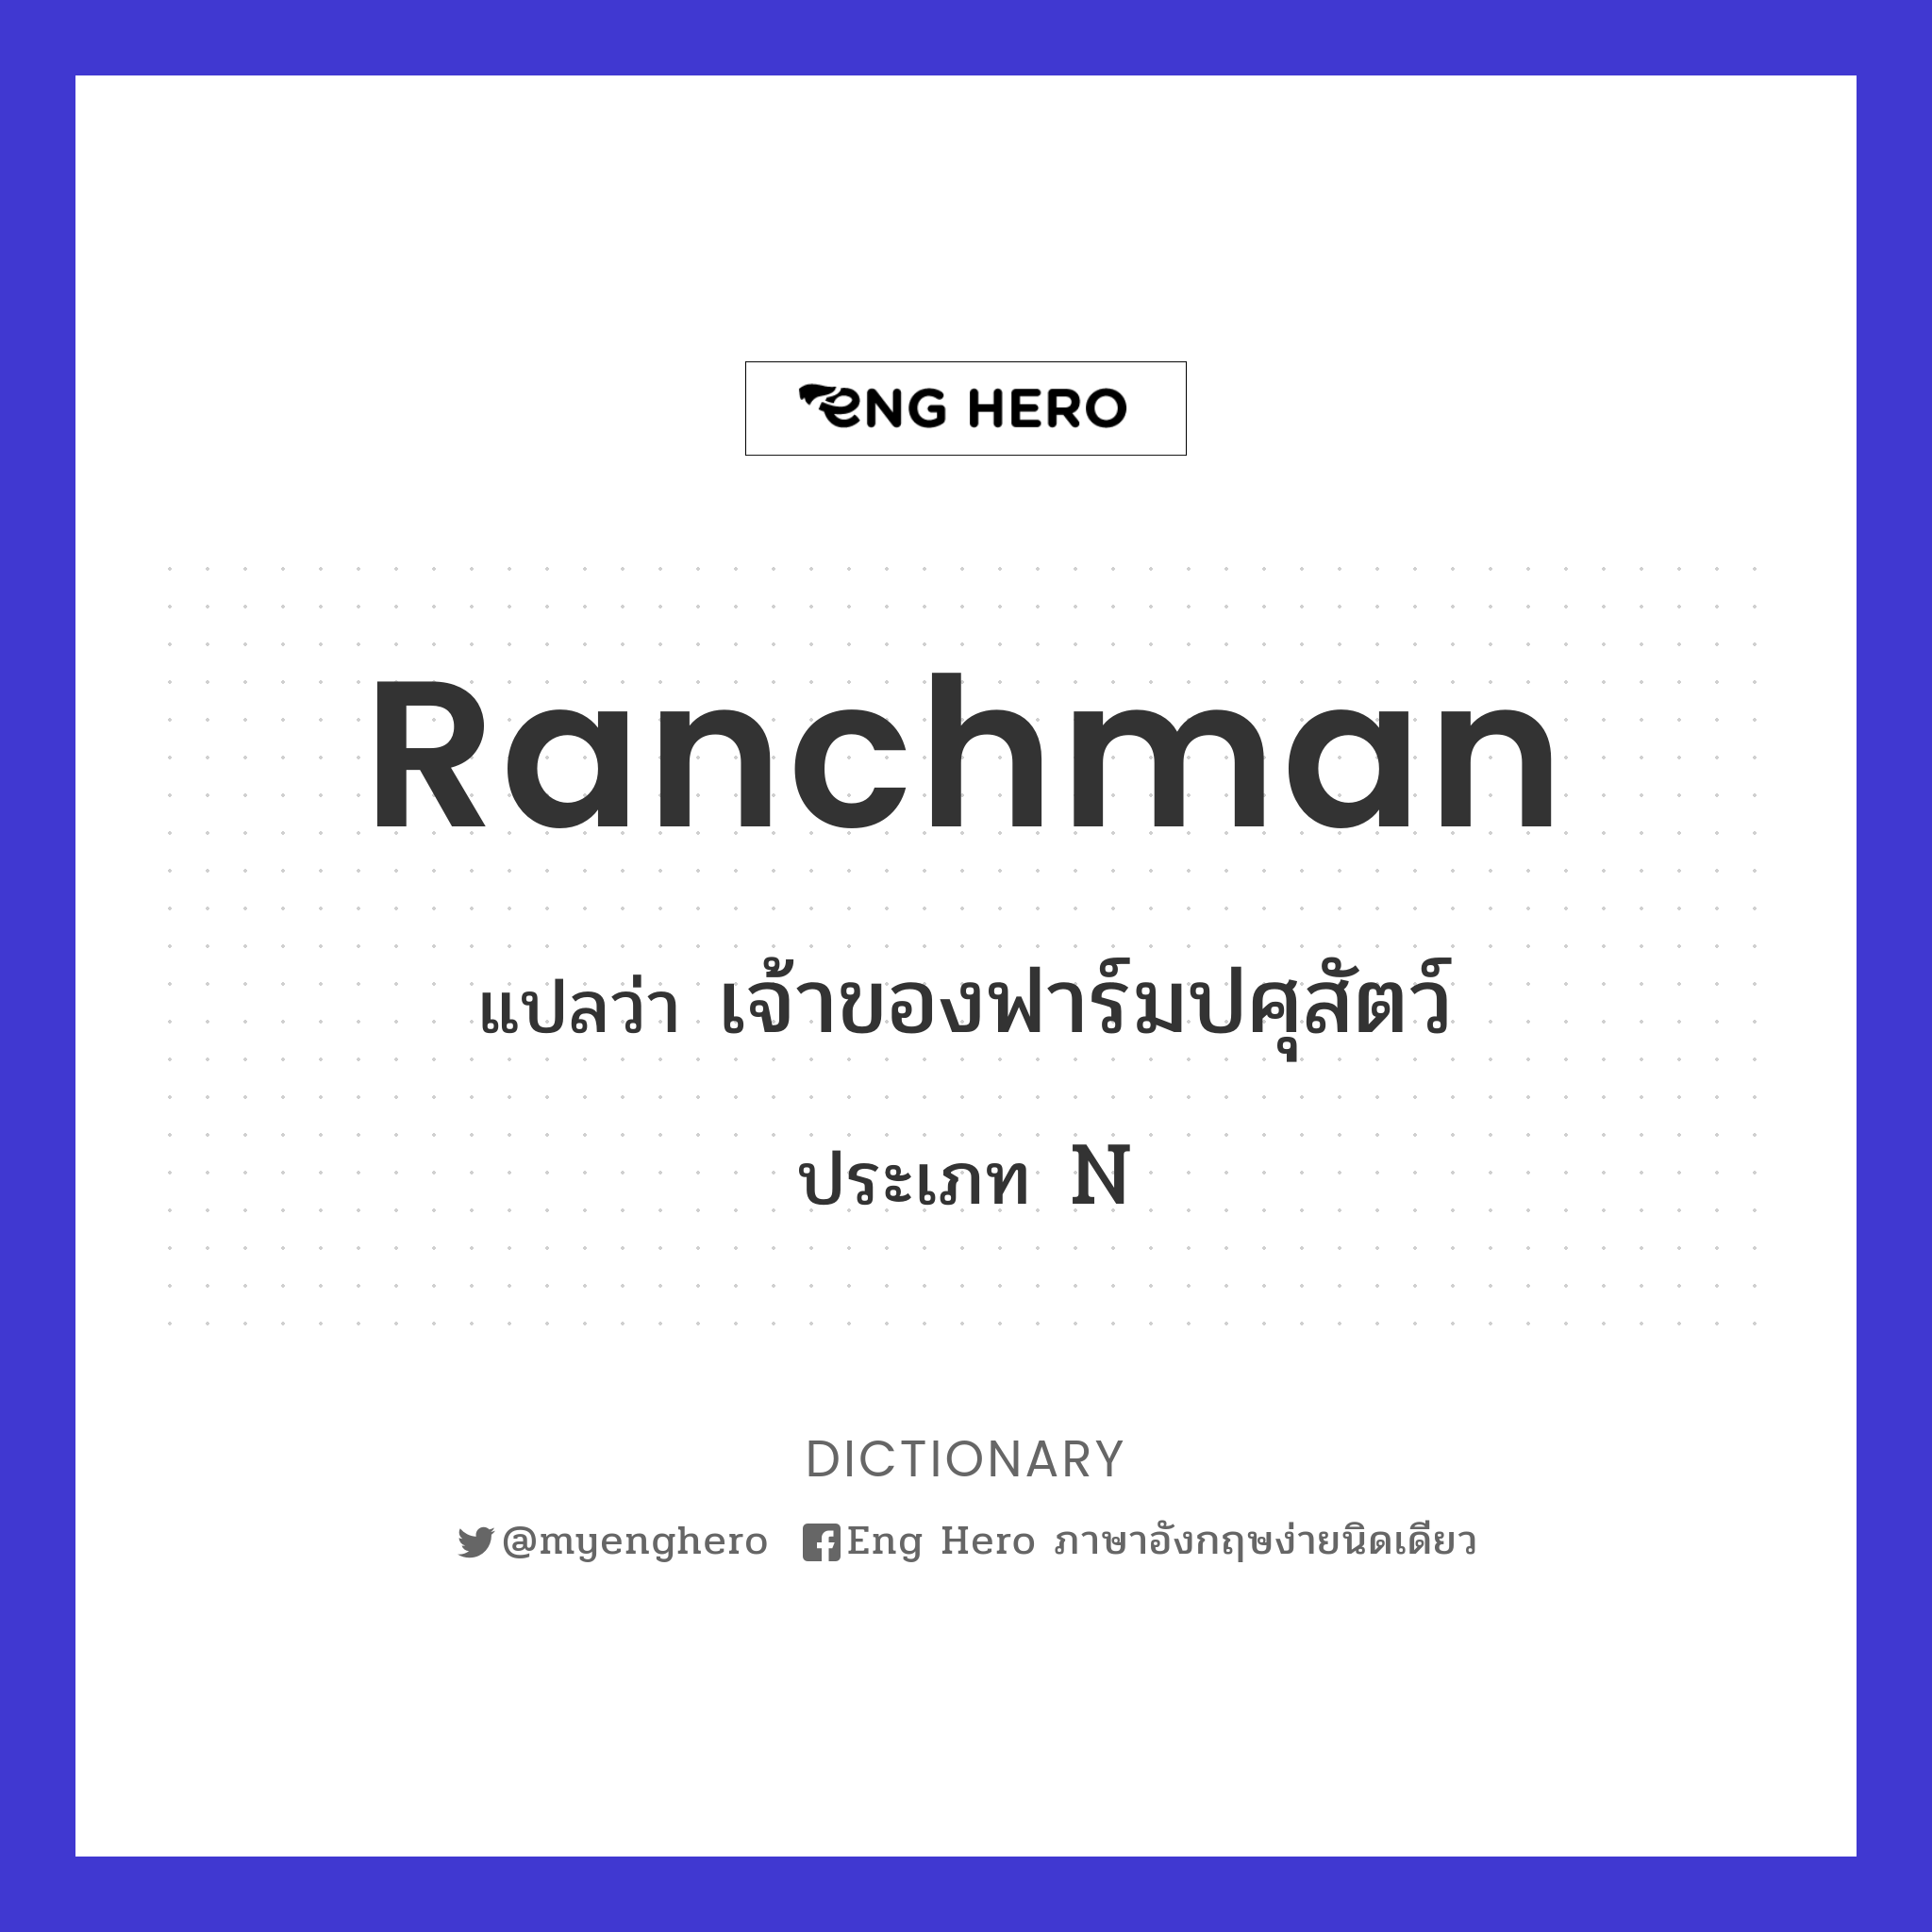 ranchman